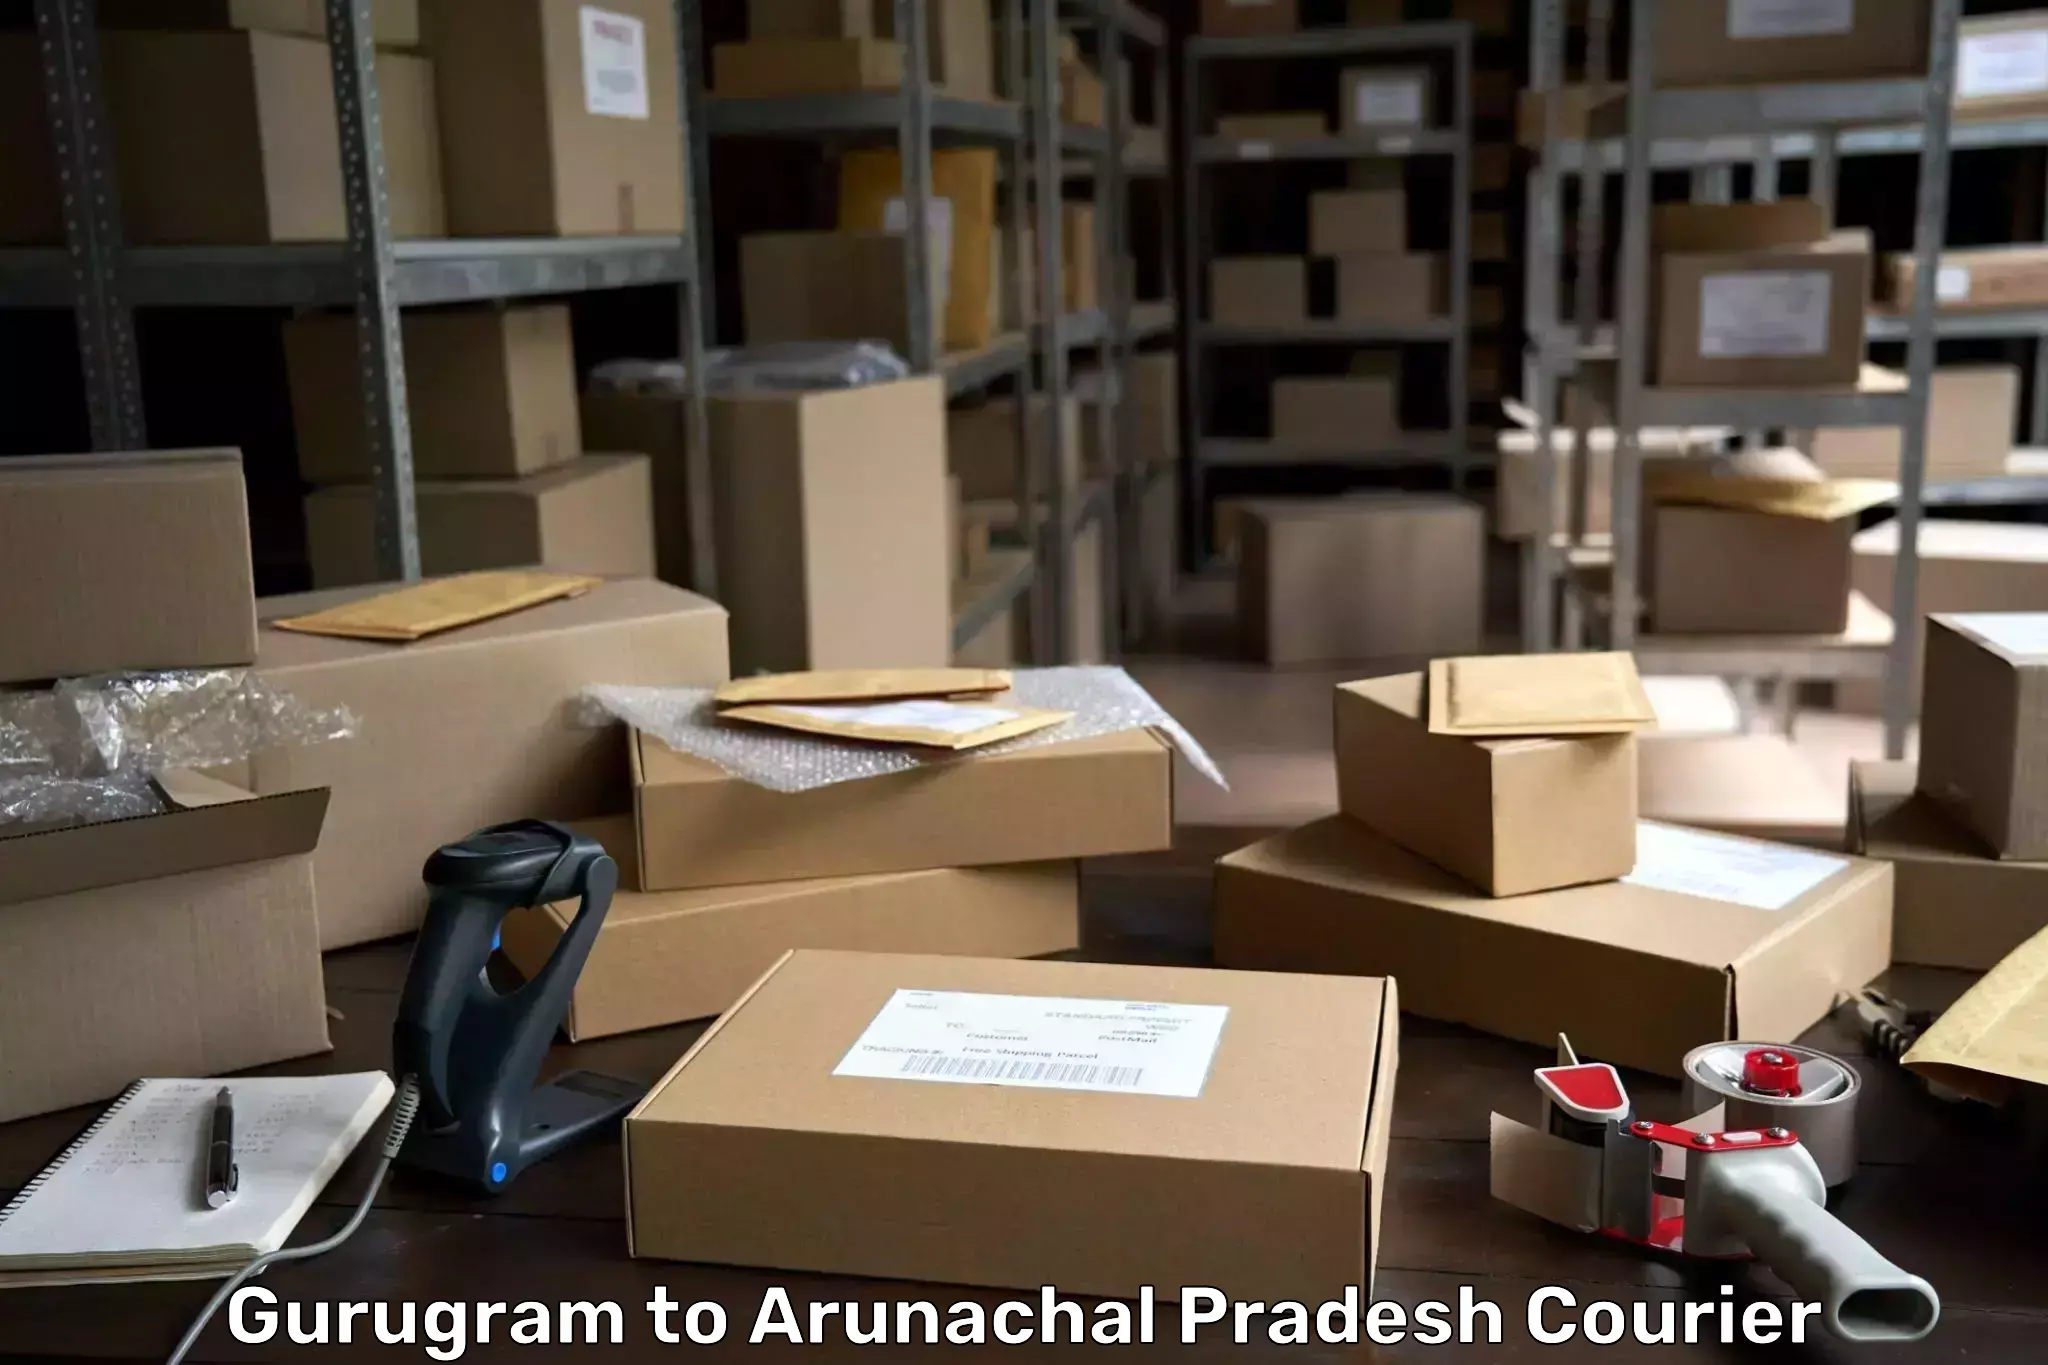 Cargo courier service Gurugram to Arunachal Pradesh